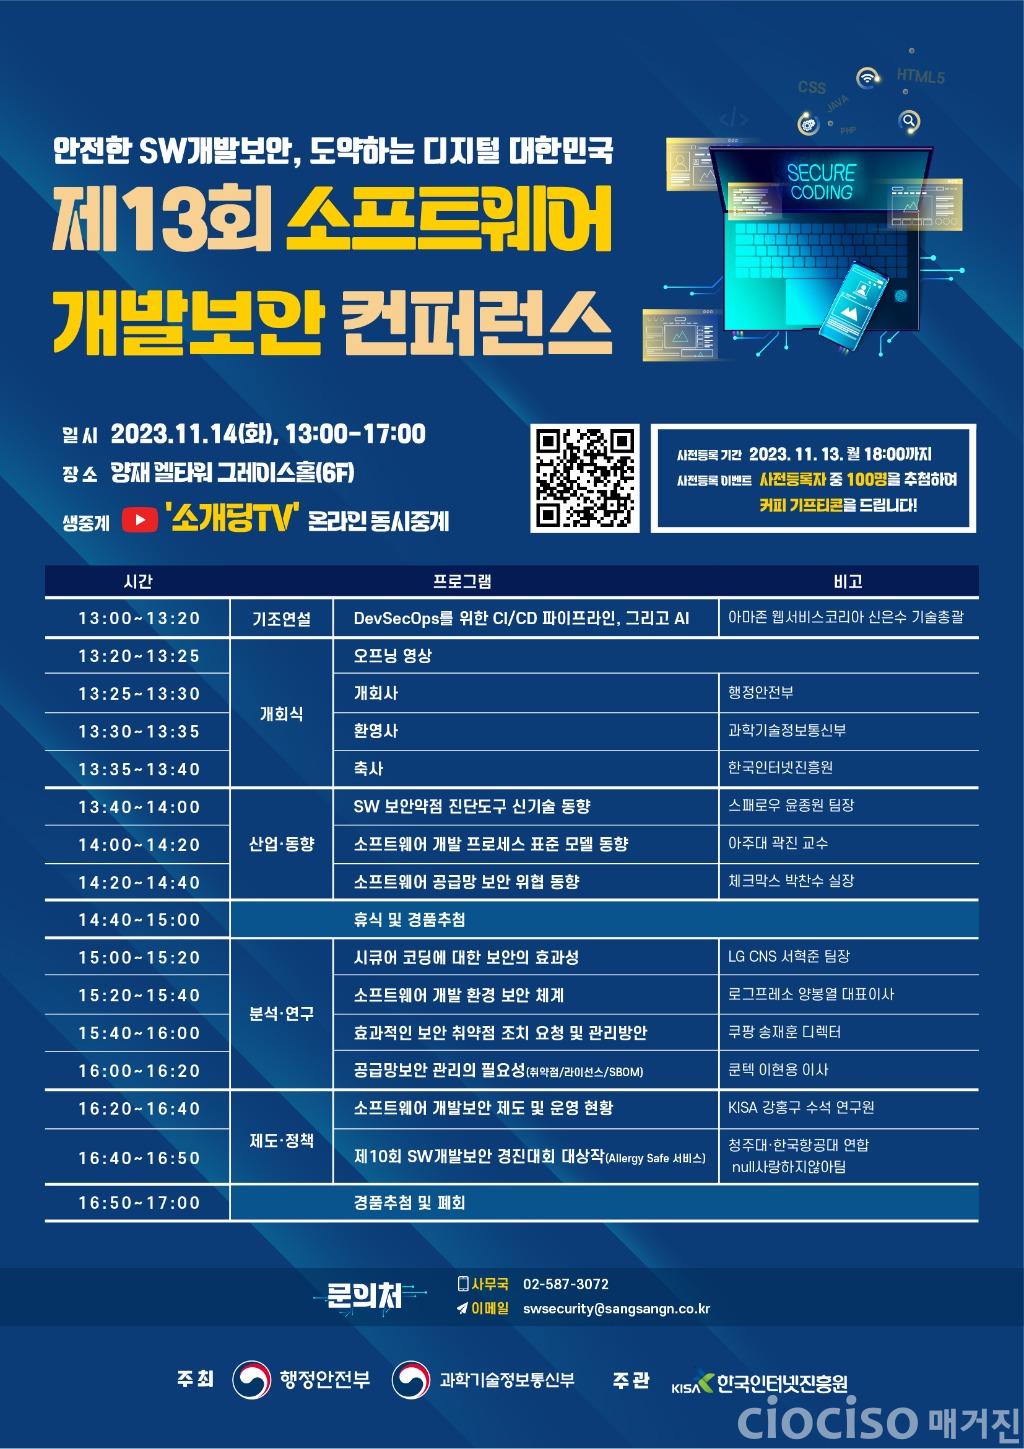 231107-KISA-참고이미지(제13회 소프트웨어 개발보안 컨퍼런스 개최 포스터).jpg